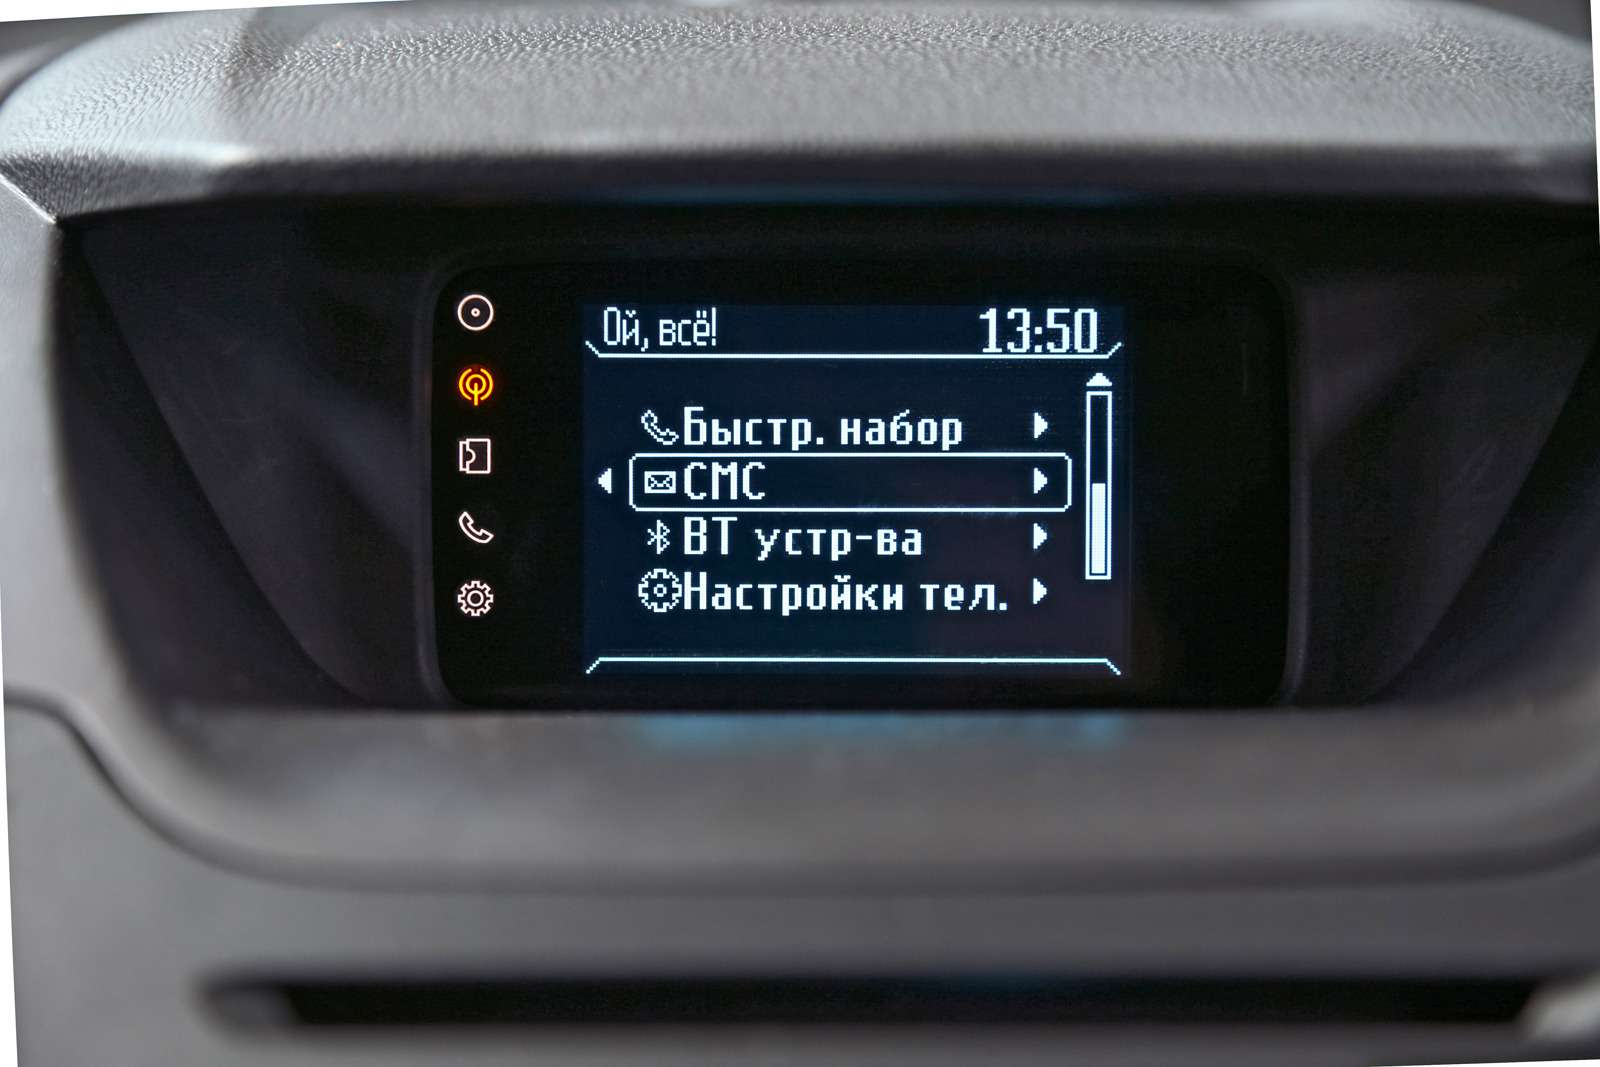 Ford EcoSport. Несмотря на скромный монохромный дисплей, фордовская система SYNC первого поколения обладает минимально необходимым набором функций